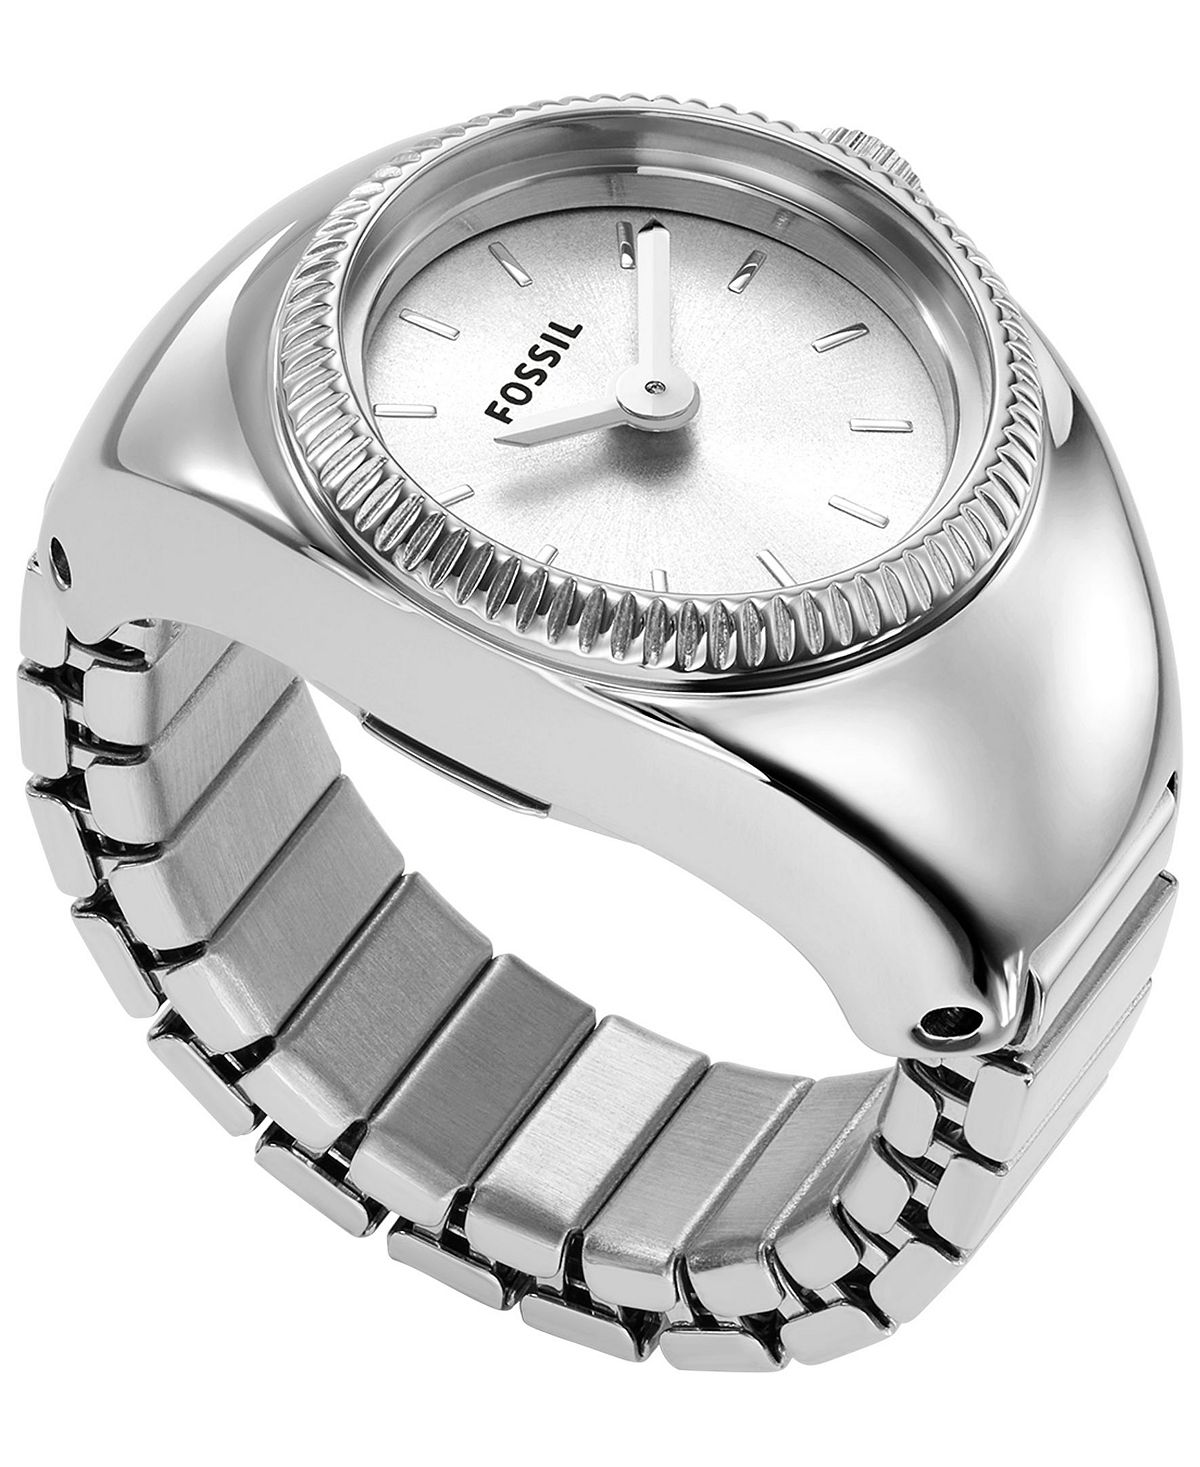 Женские часы-кольцо, двустрелочные часы-браслет из нержавеющей стали серебристого цвета, 15 мм Fossil женские часы cristal из нержавеющей стали серебристого цвета 28 мм jbw